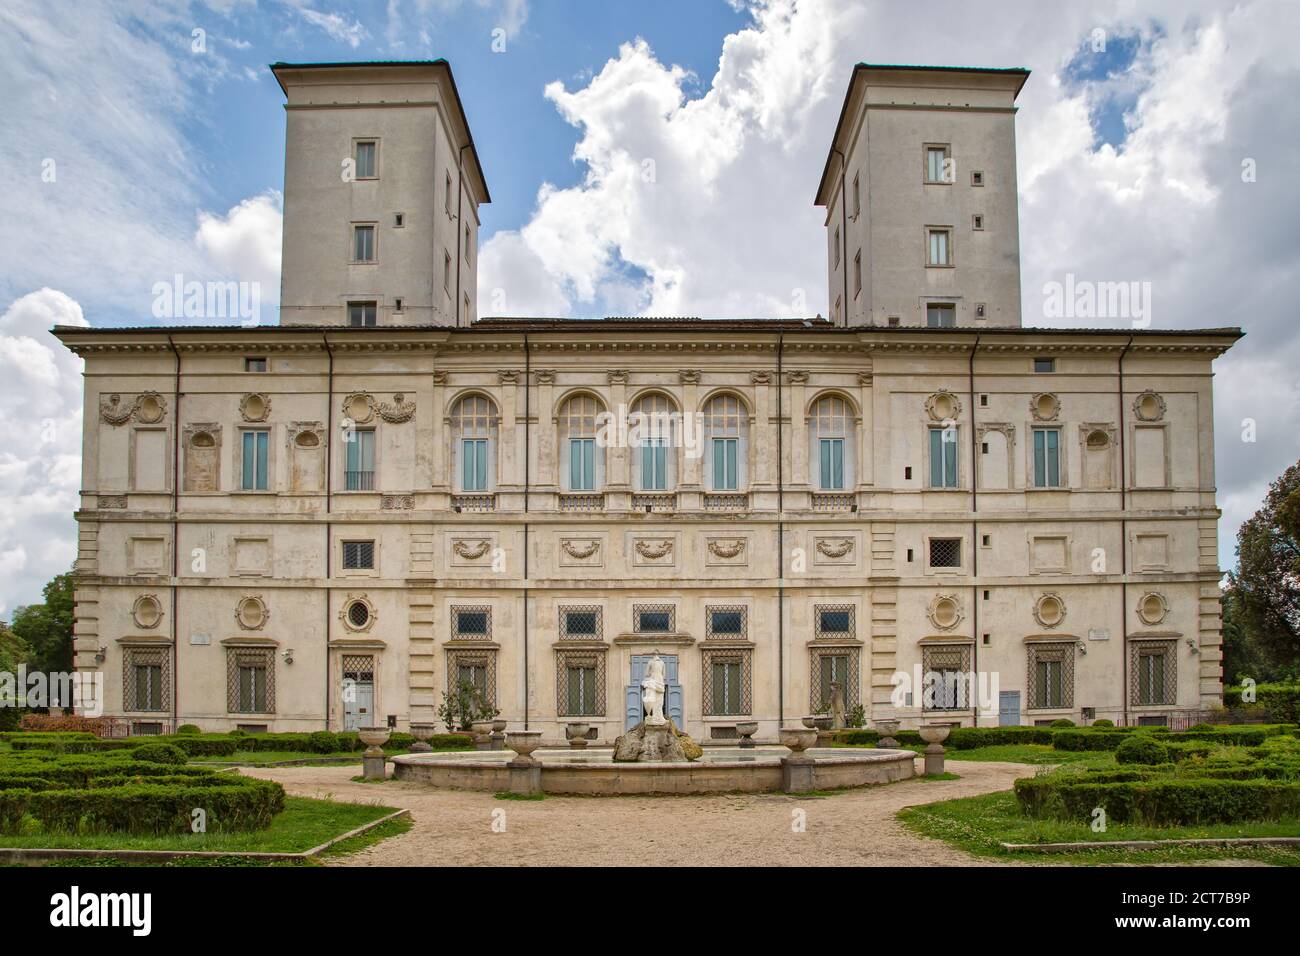 Roma, Italia - 15 maggio 2016: Nel parco di Villa Borghese si trova la famosa Galleria Borghese con tutti i vostri tesori artistici Foto Stock